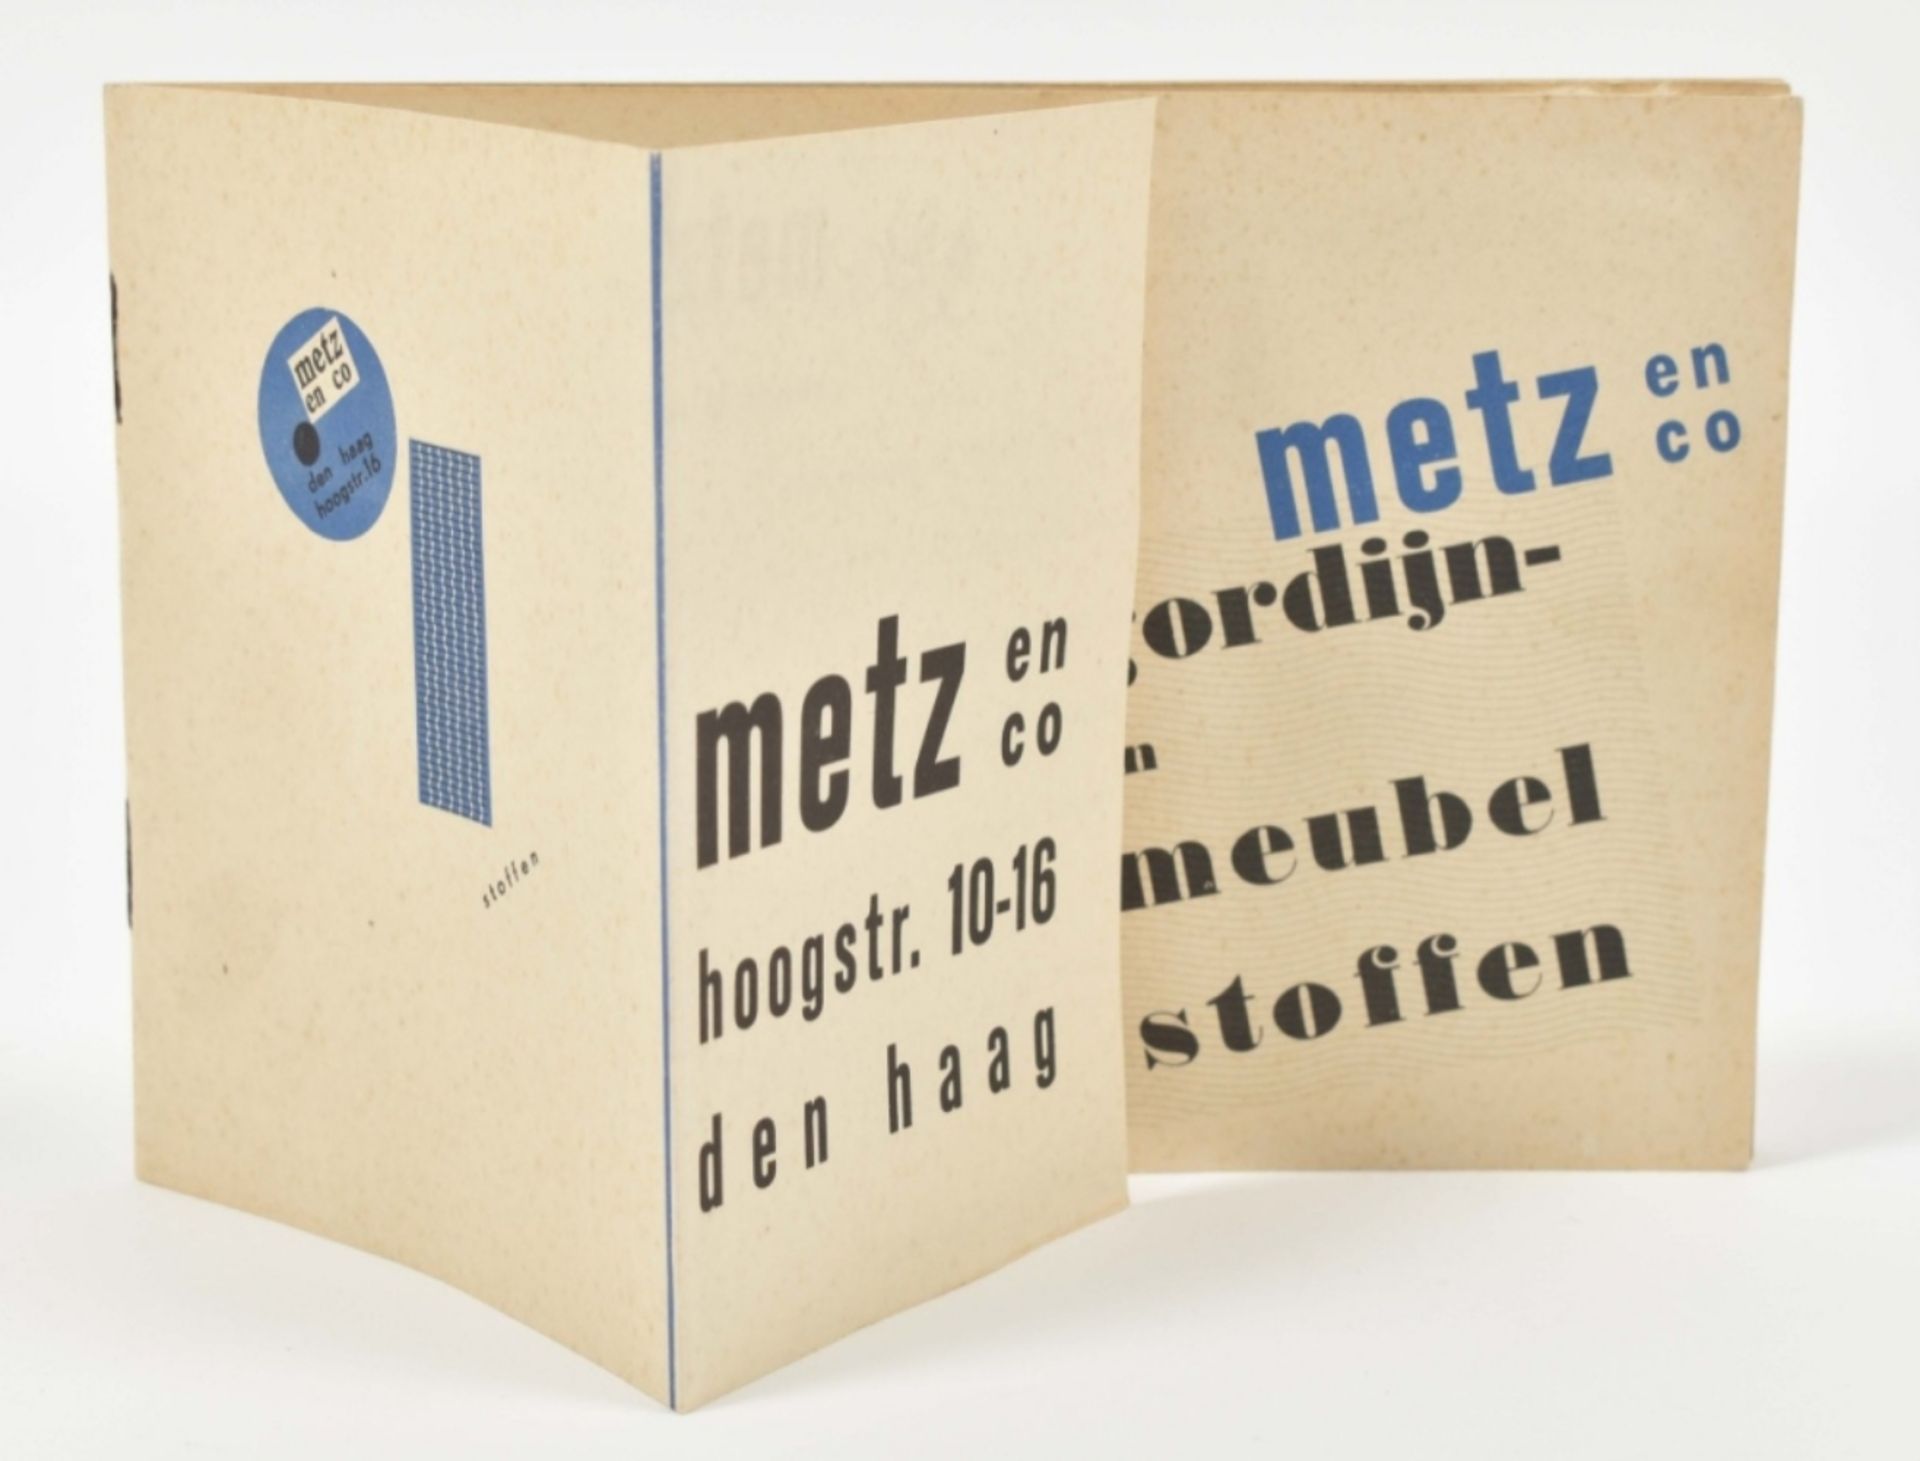 Dick Elffers (1910-1990). Metz en Co. Gordijn-en Meublelstoffen